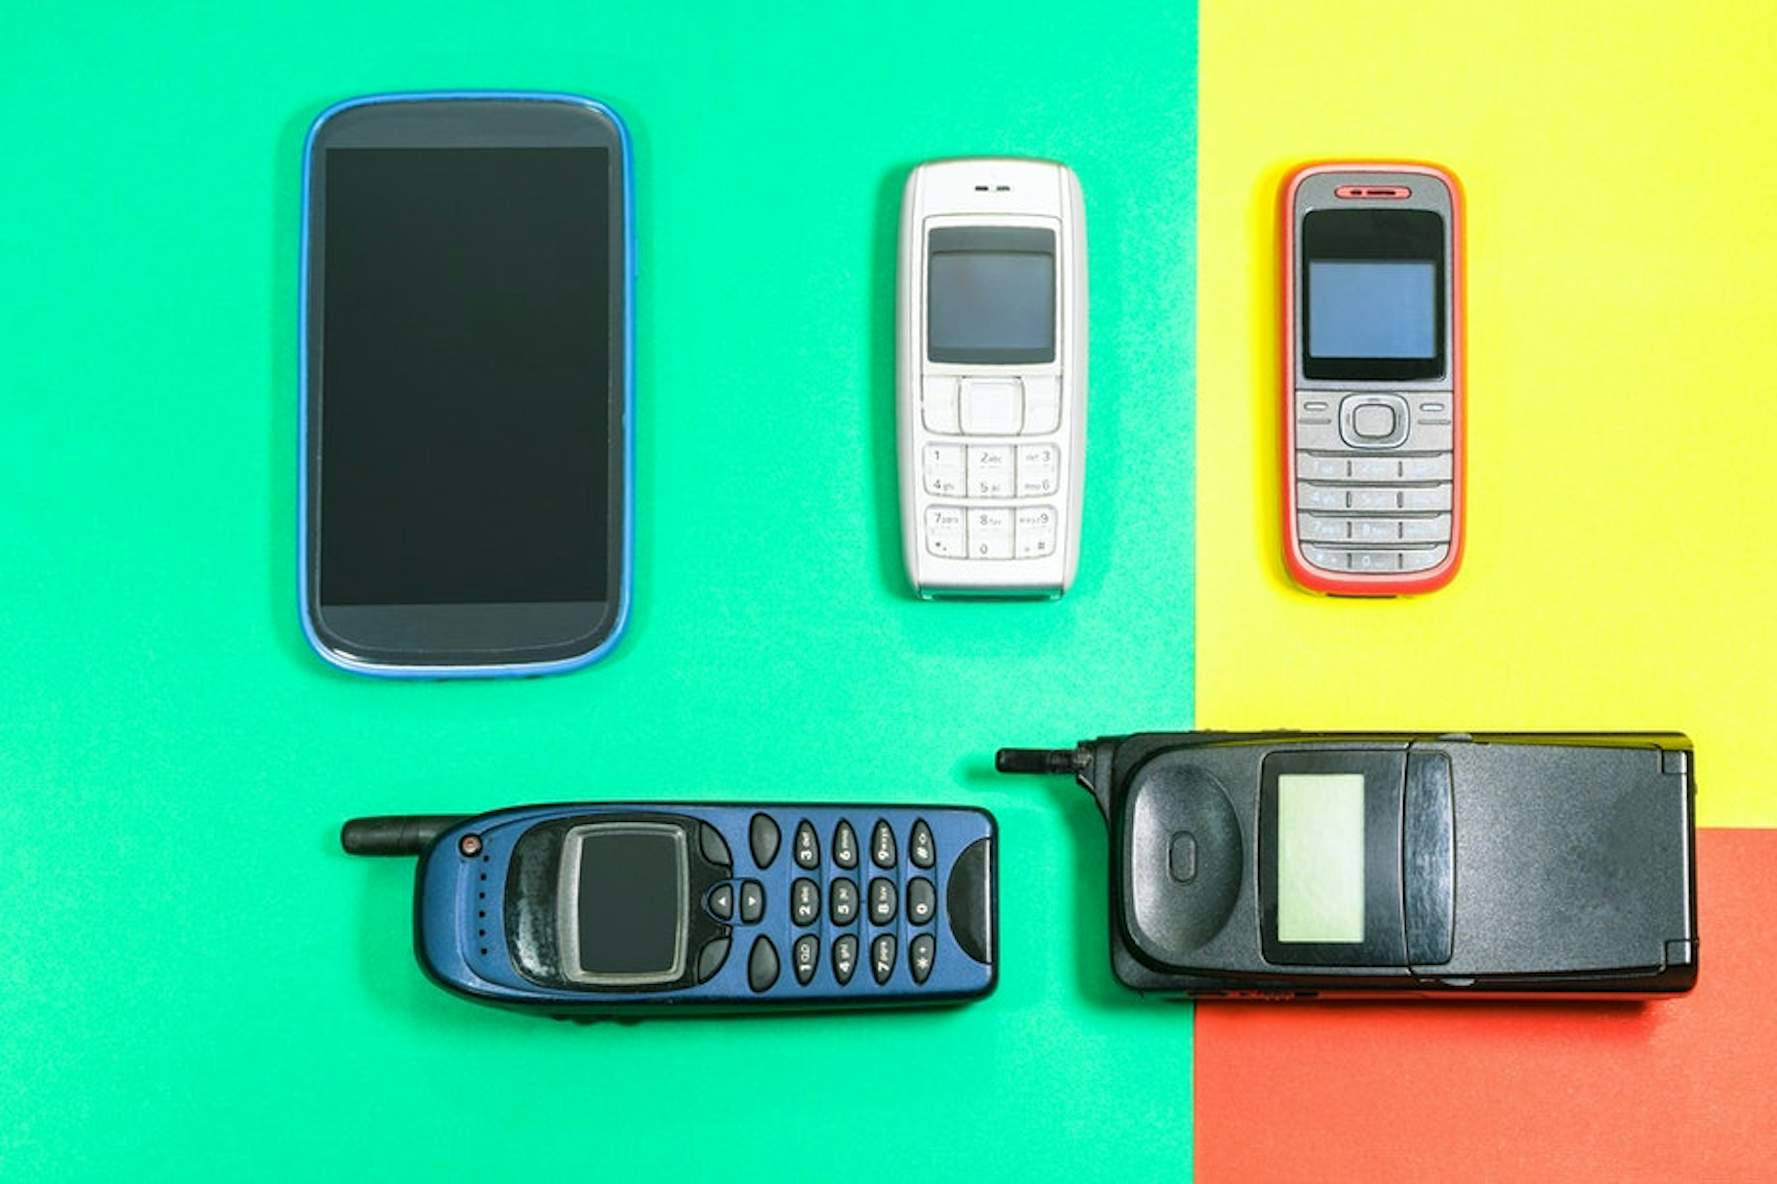 Husker du? Disse telefoner fra år 2000 stadig brug | Komputer.dk